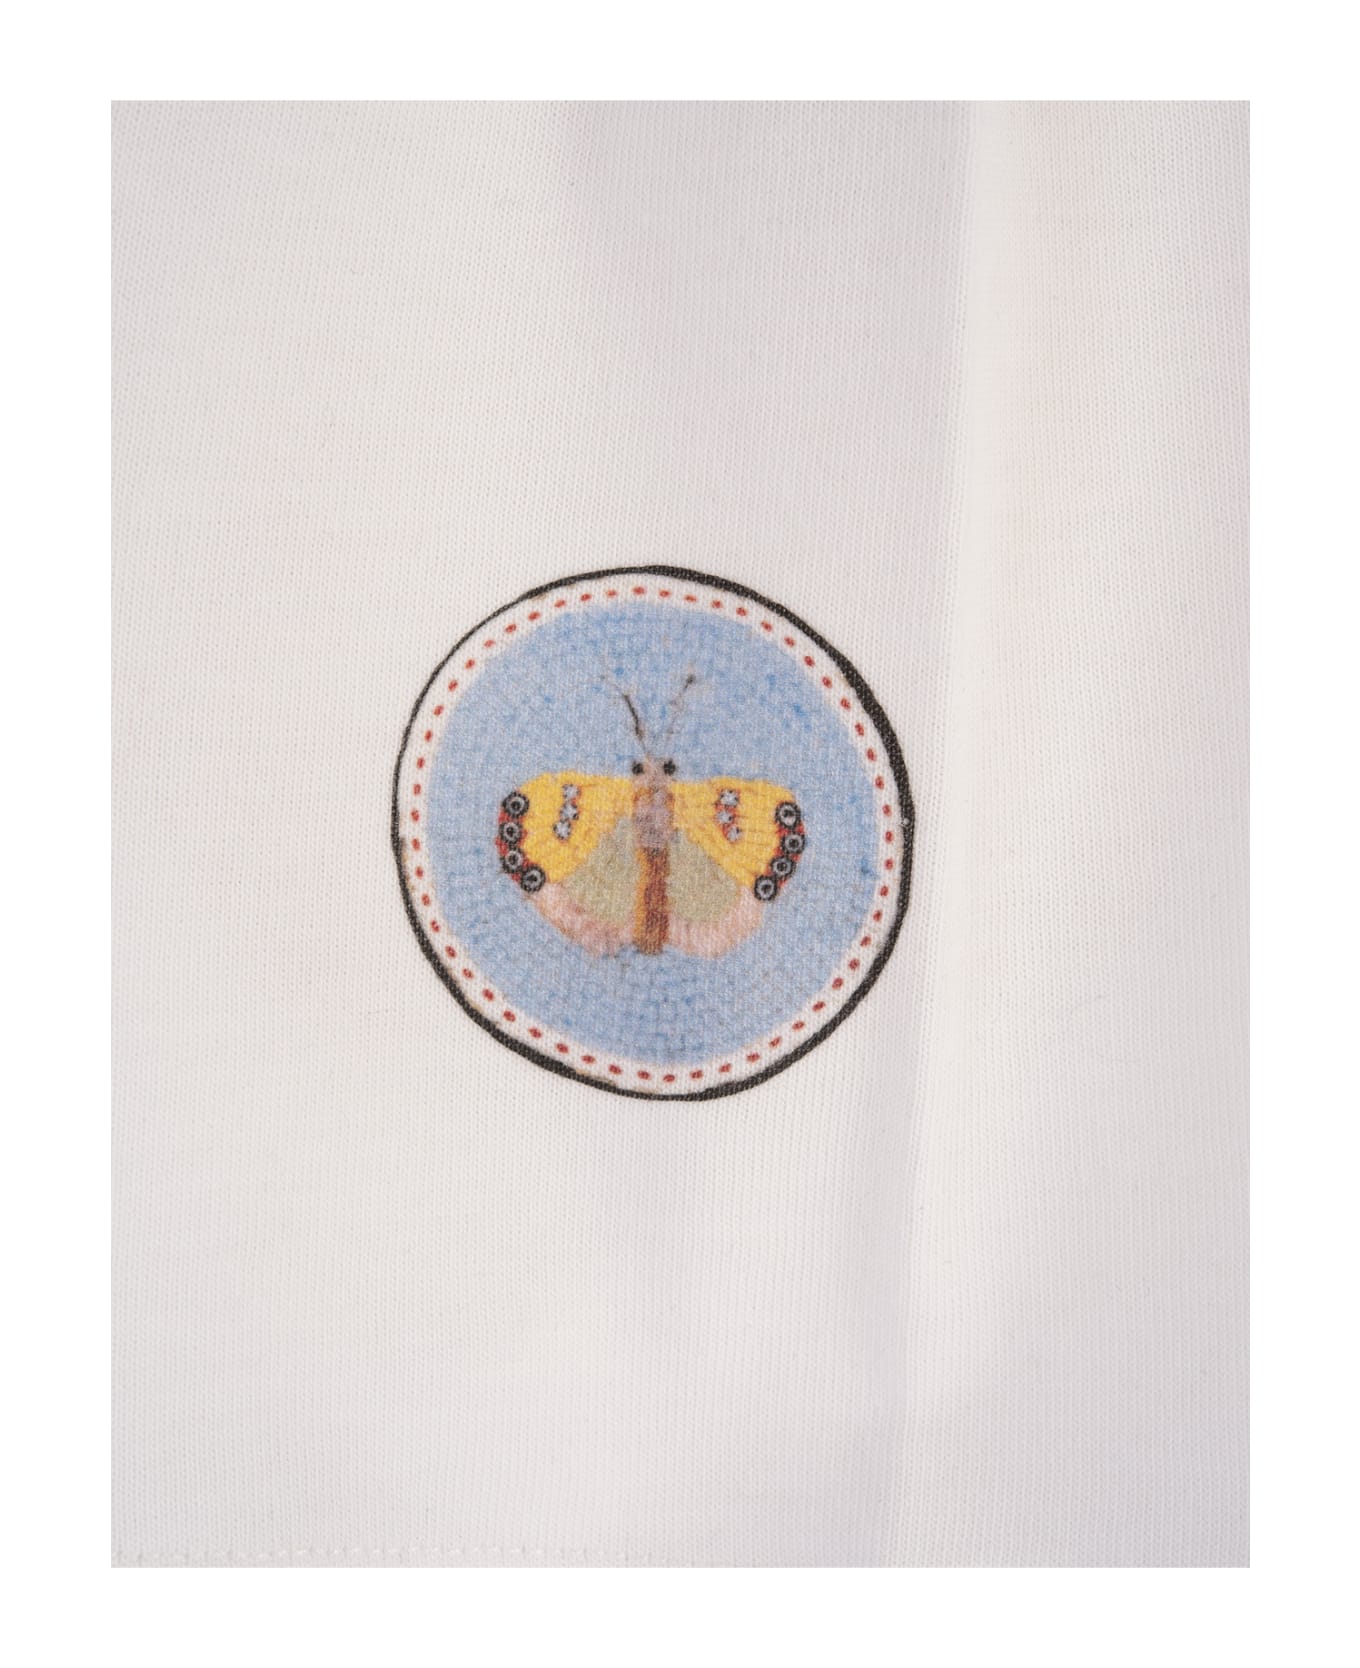 Giambattista Valli White Crop Top With Micromosaic Print - White